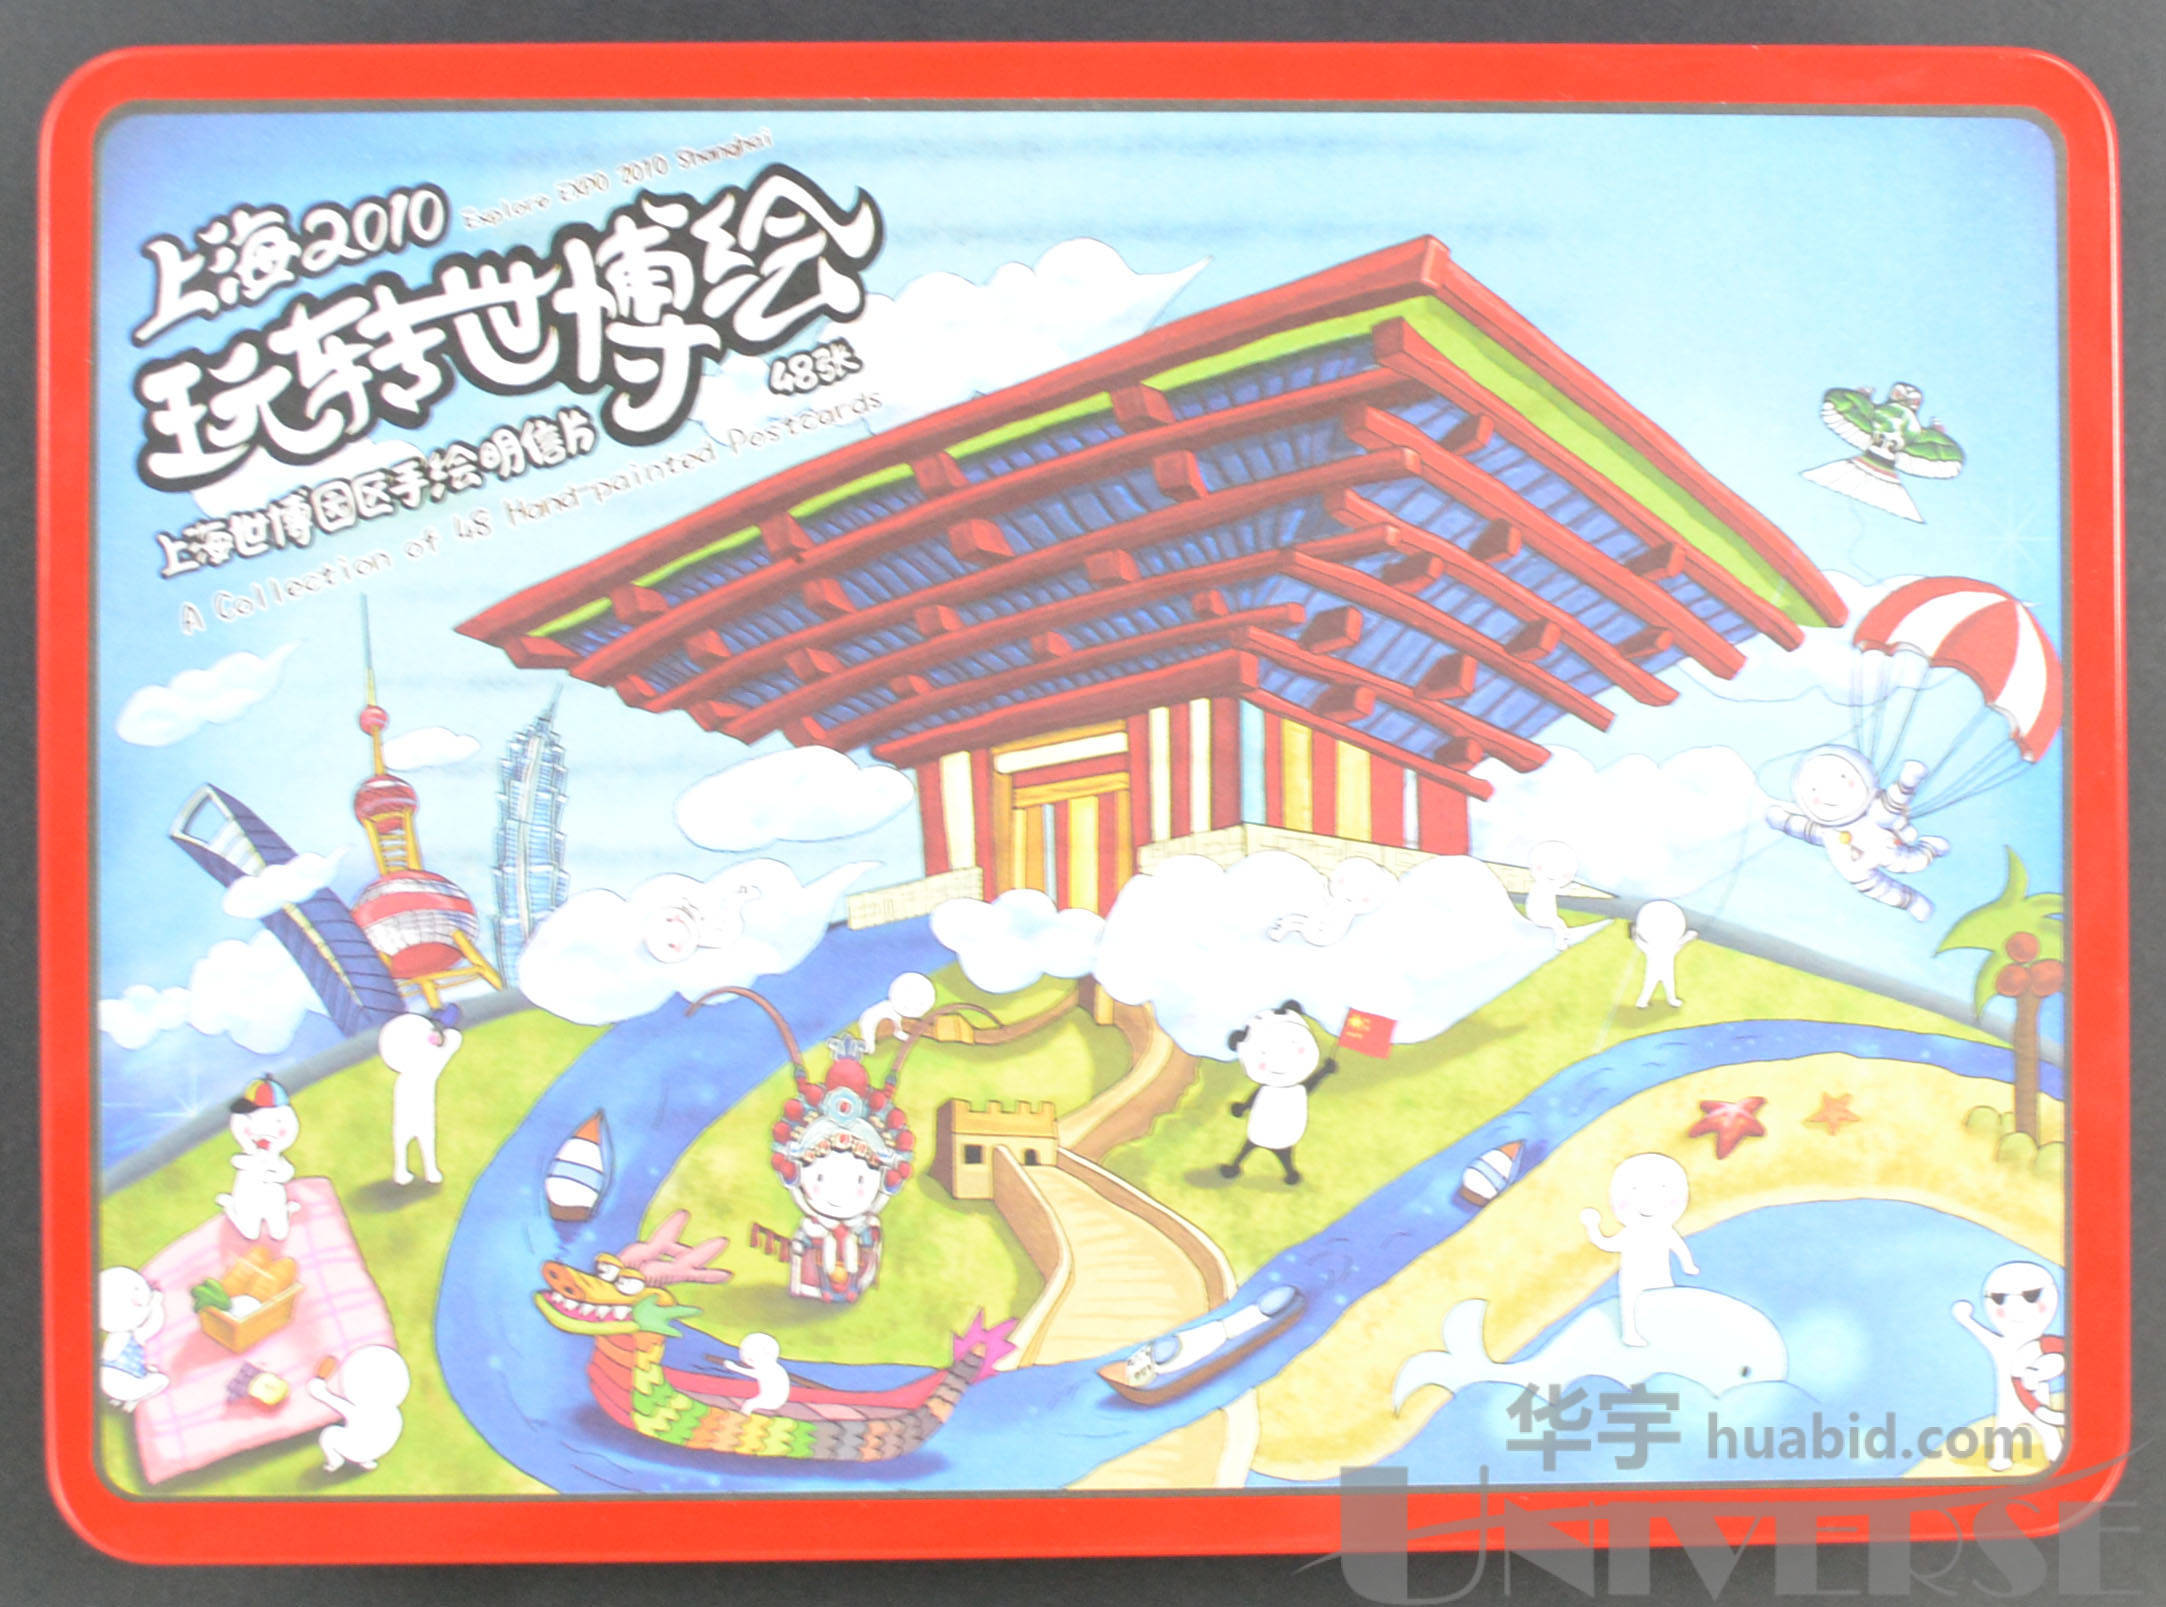 上海2010玩转世博会世博园区手绘明信片一箱(20盒,每盒48张明信片)